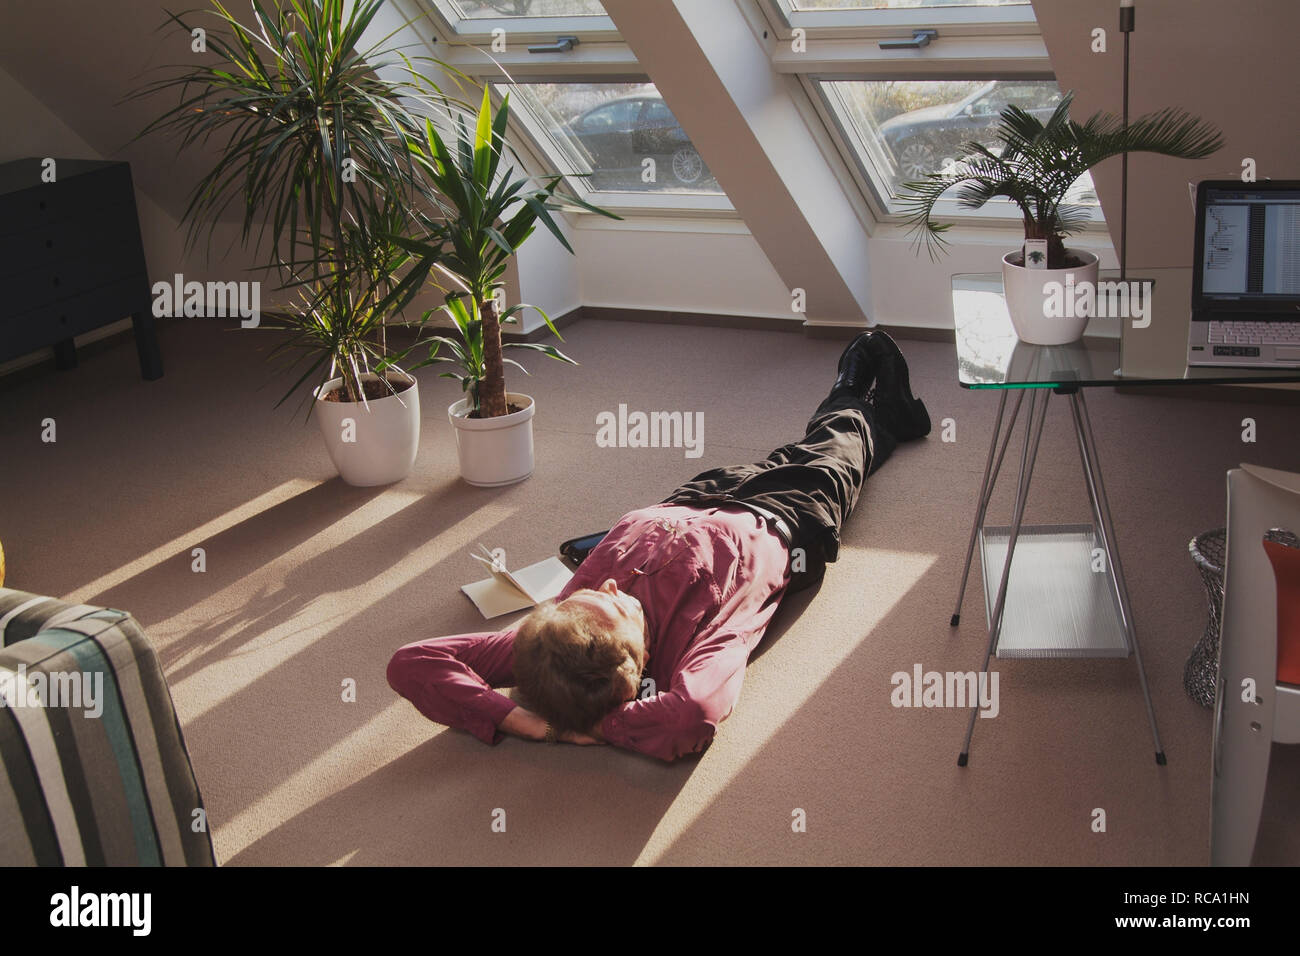 Mann mittleren Alters liegt auf dem Boden und entspannt | middleaged man is relaxing on the floor Stock Photo